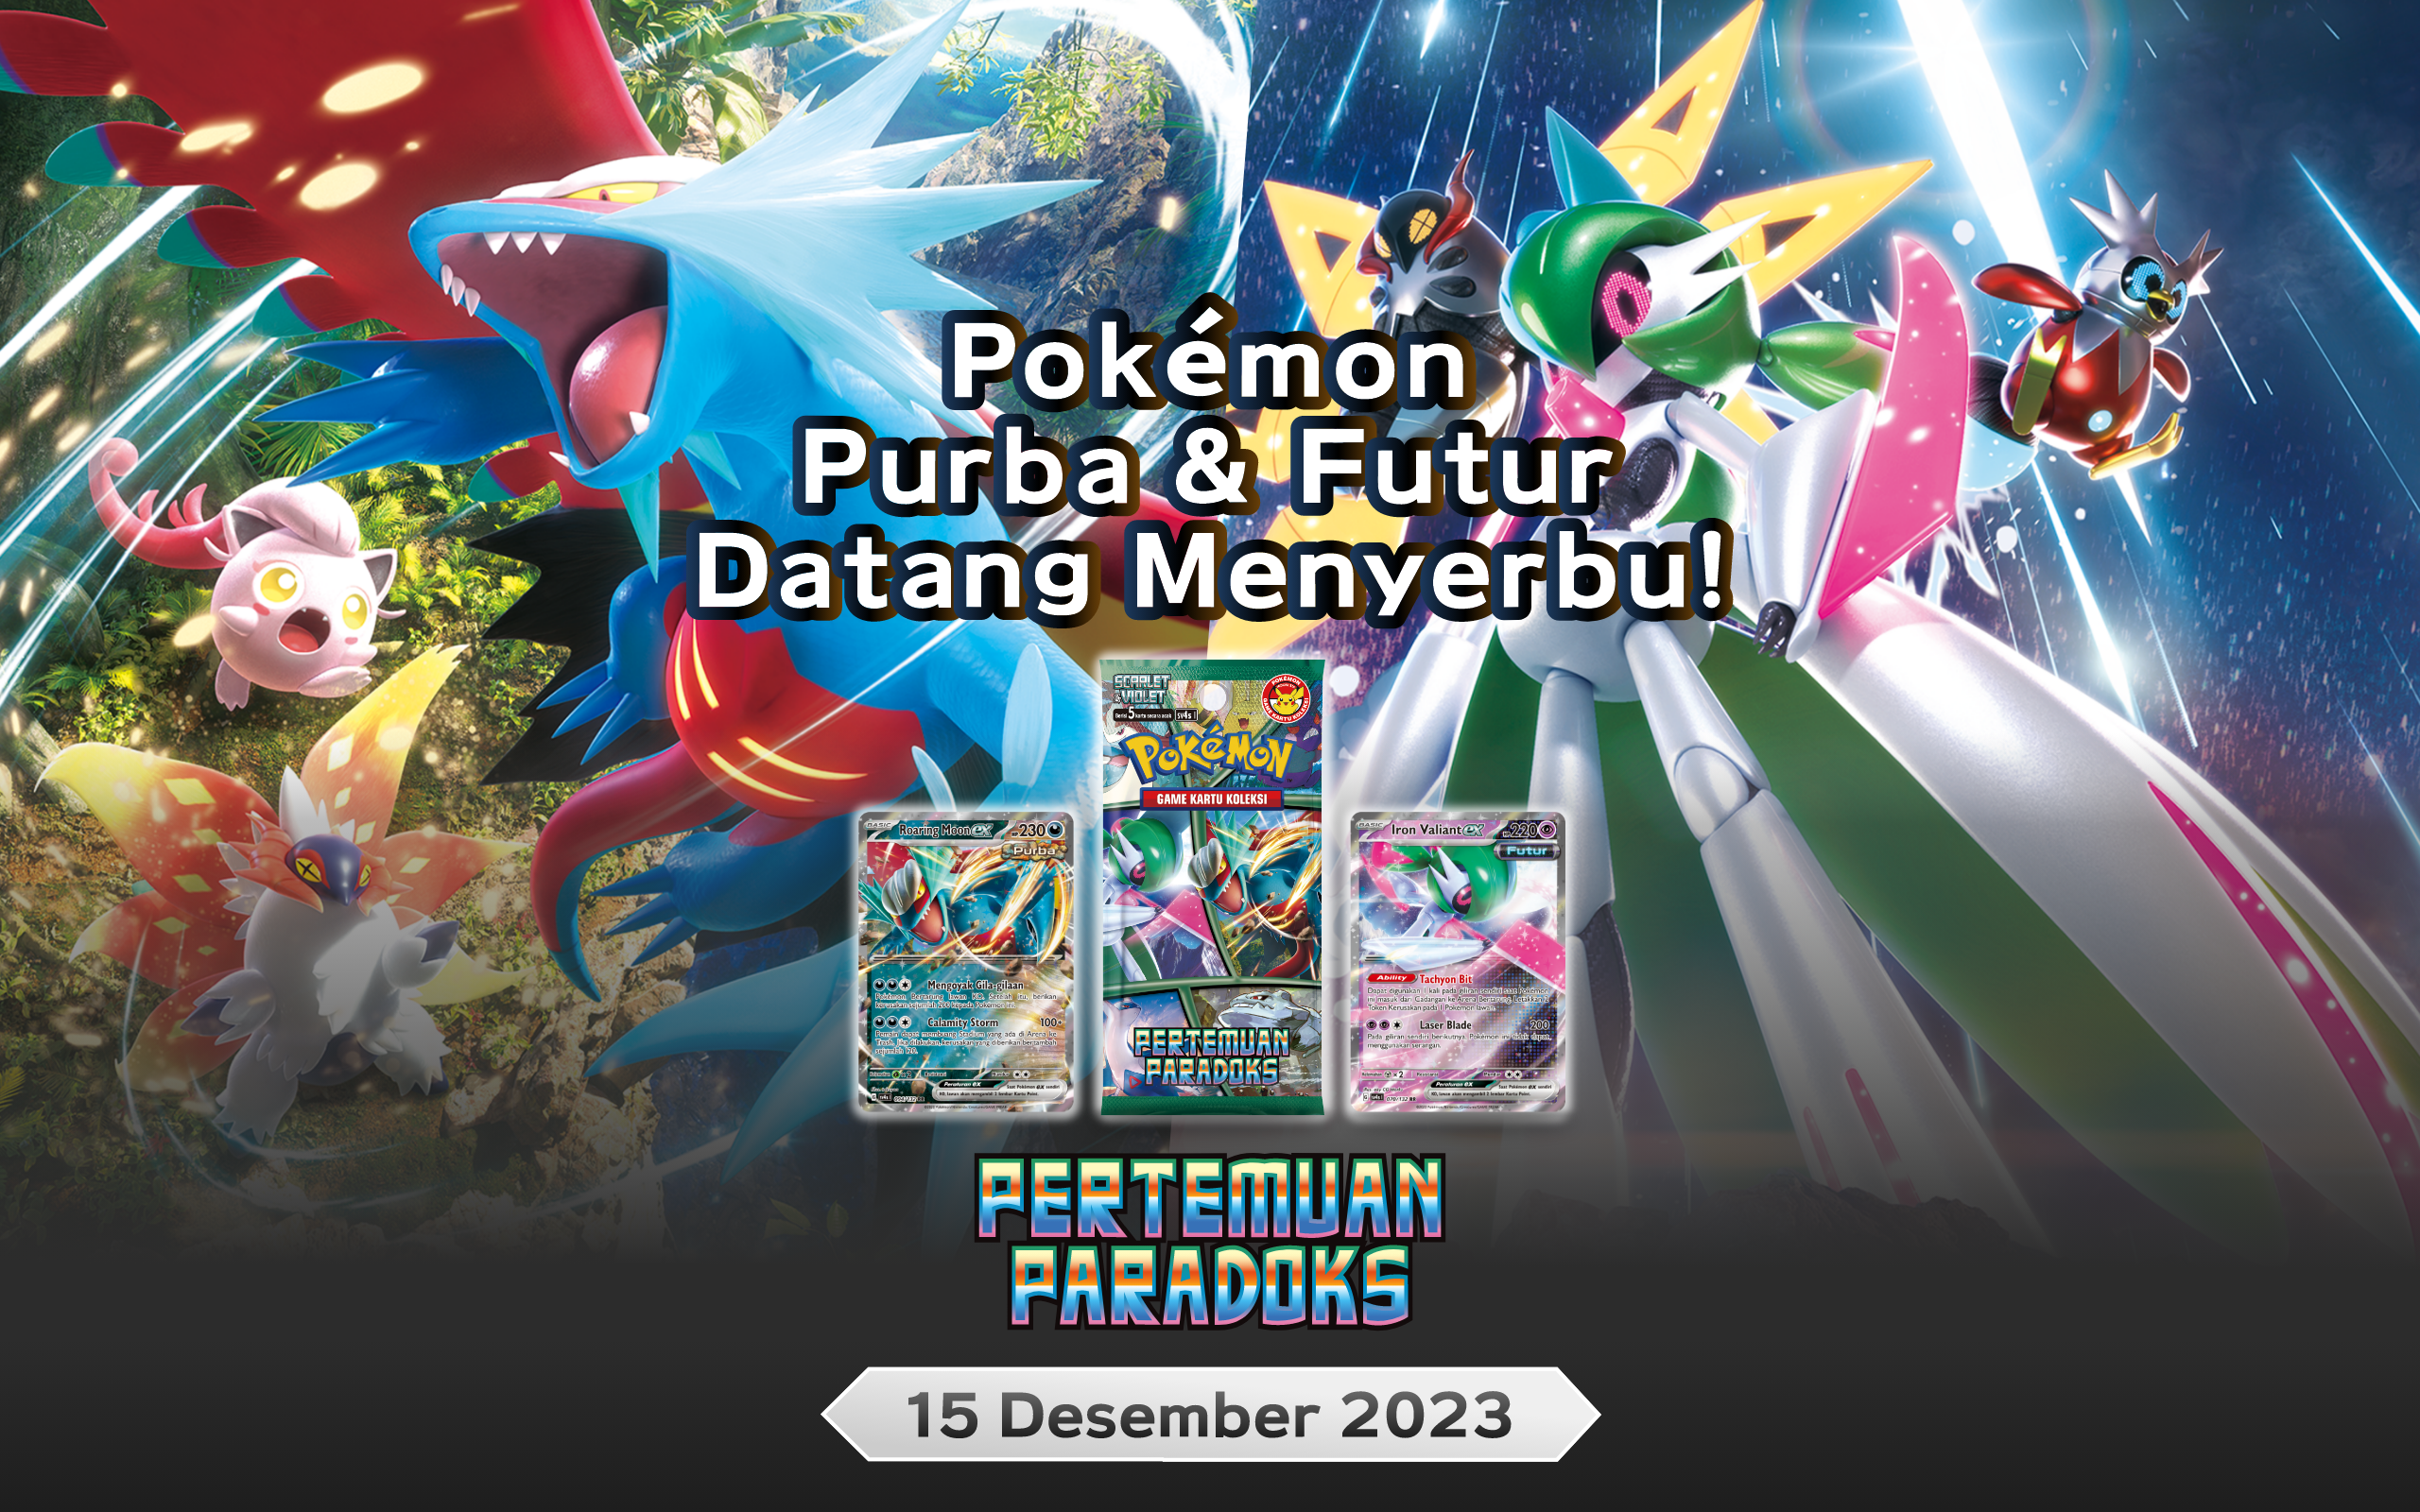 Pokémon Purba & Futur Datang Menyerbu!